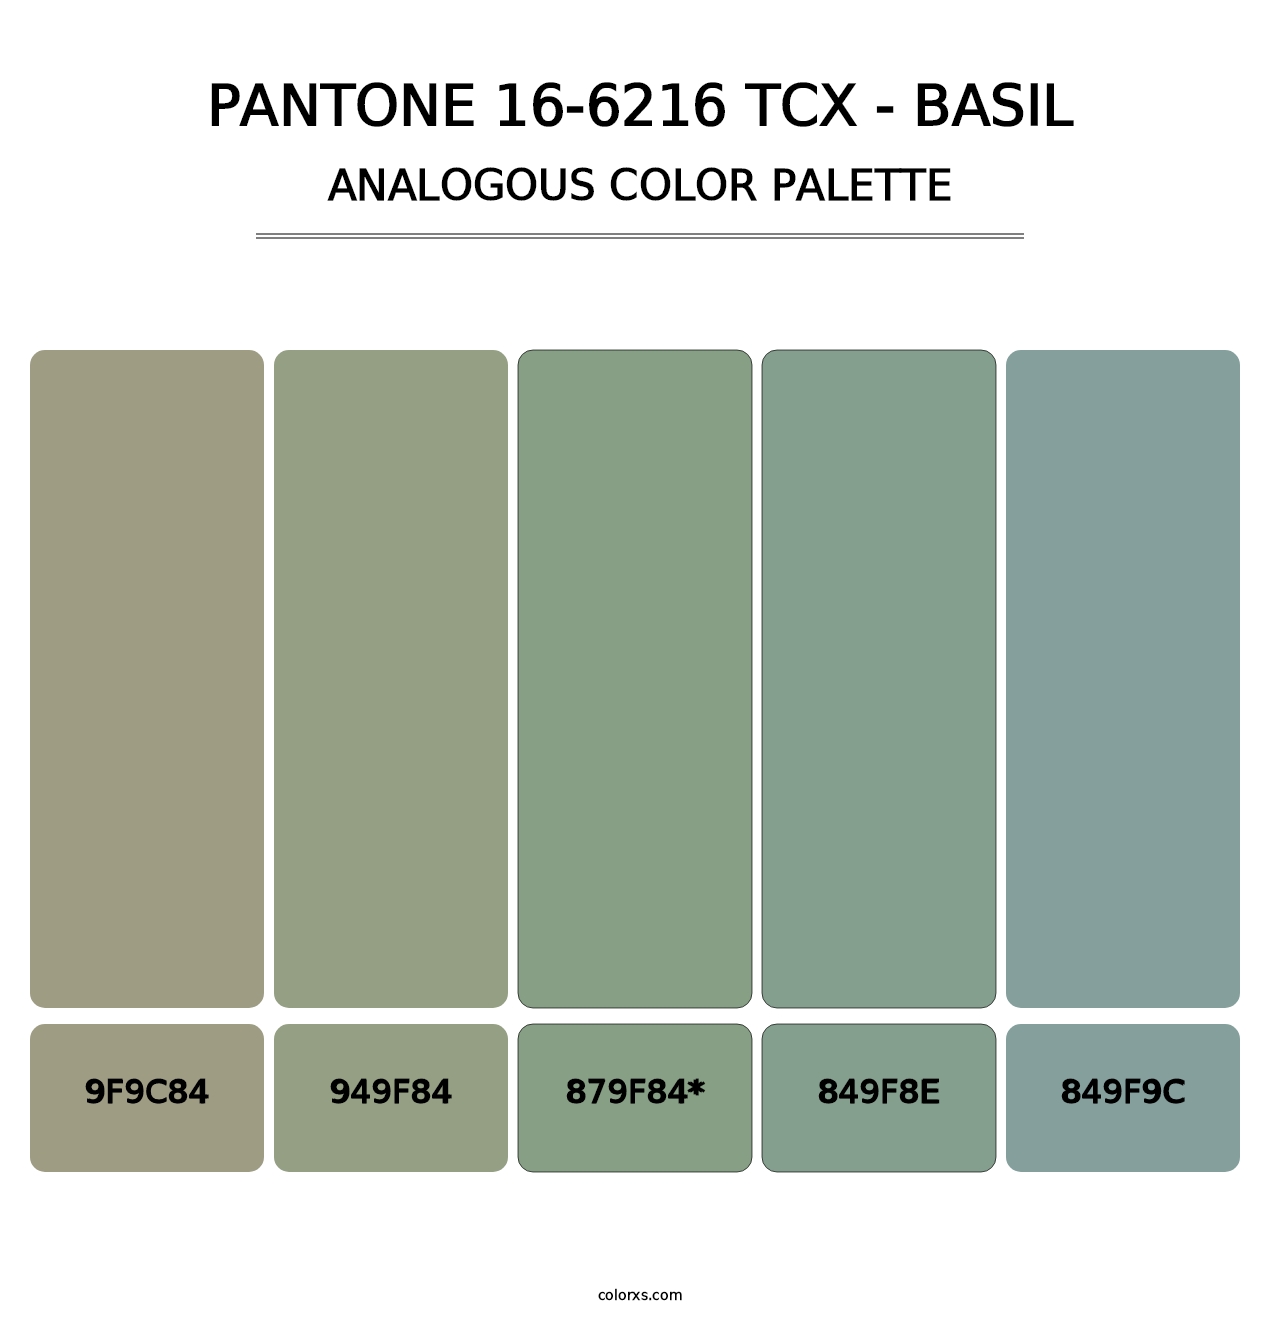 PANTONE 16-6216 TCX - Basil - Analogous Color Palette